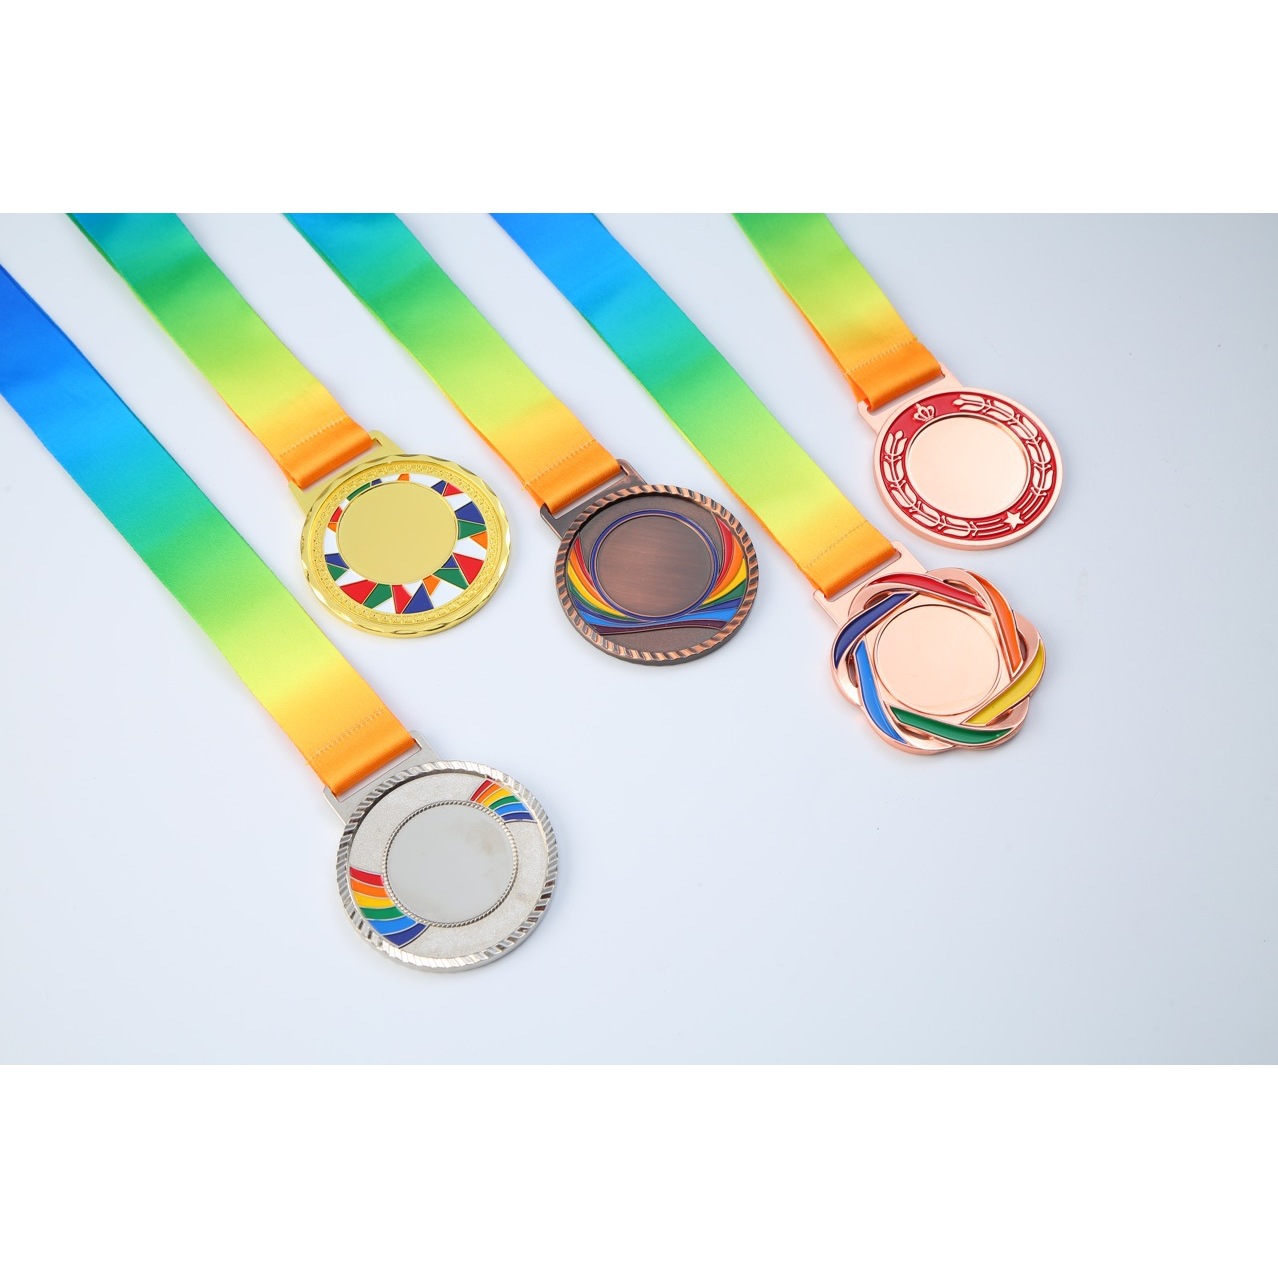 奖牌现货运动会马拉松比赛金属挂牌制作幼儿园儿童小学生挂牌